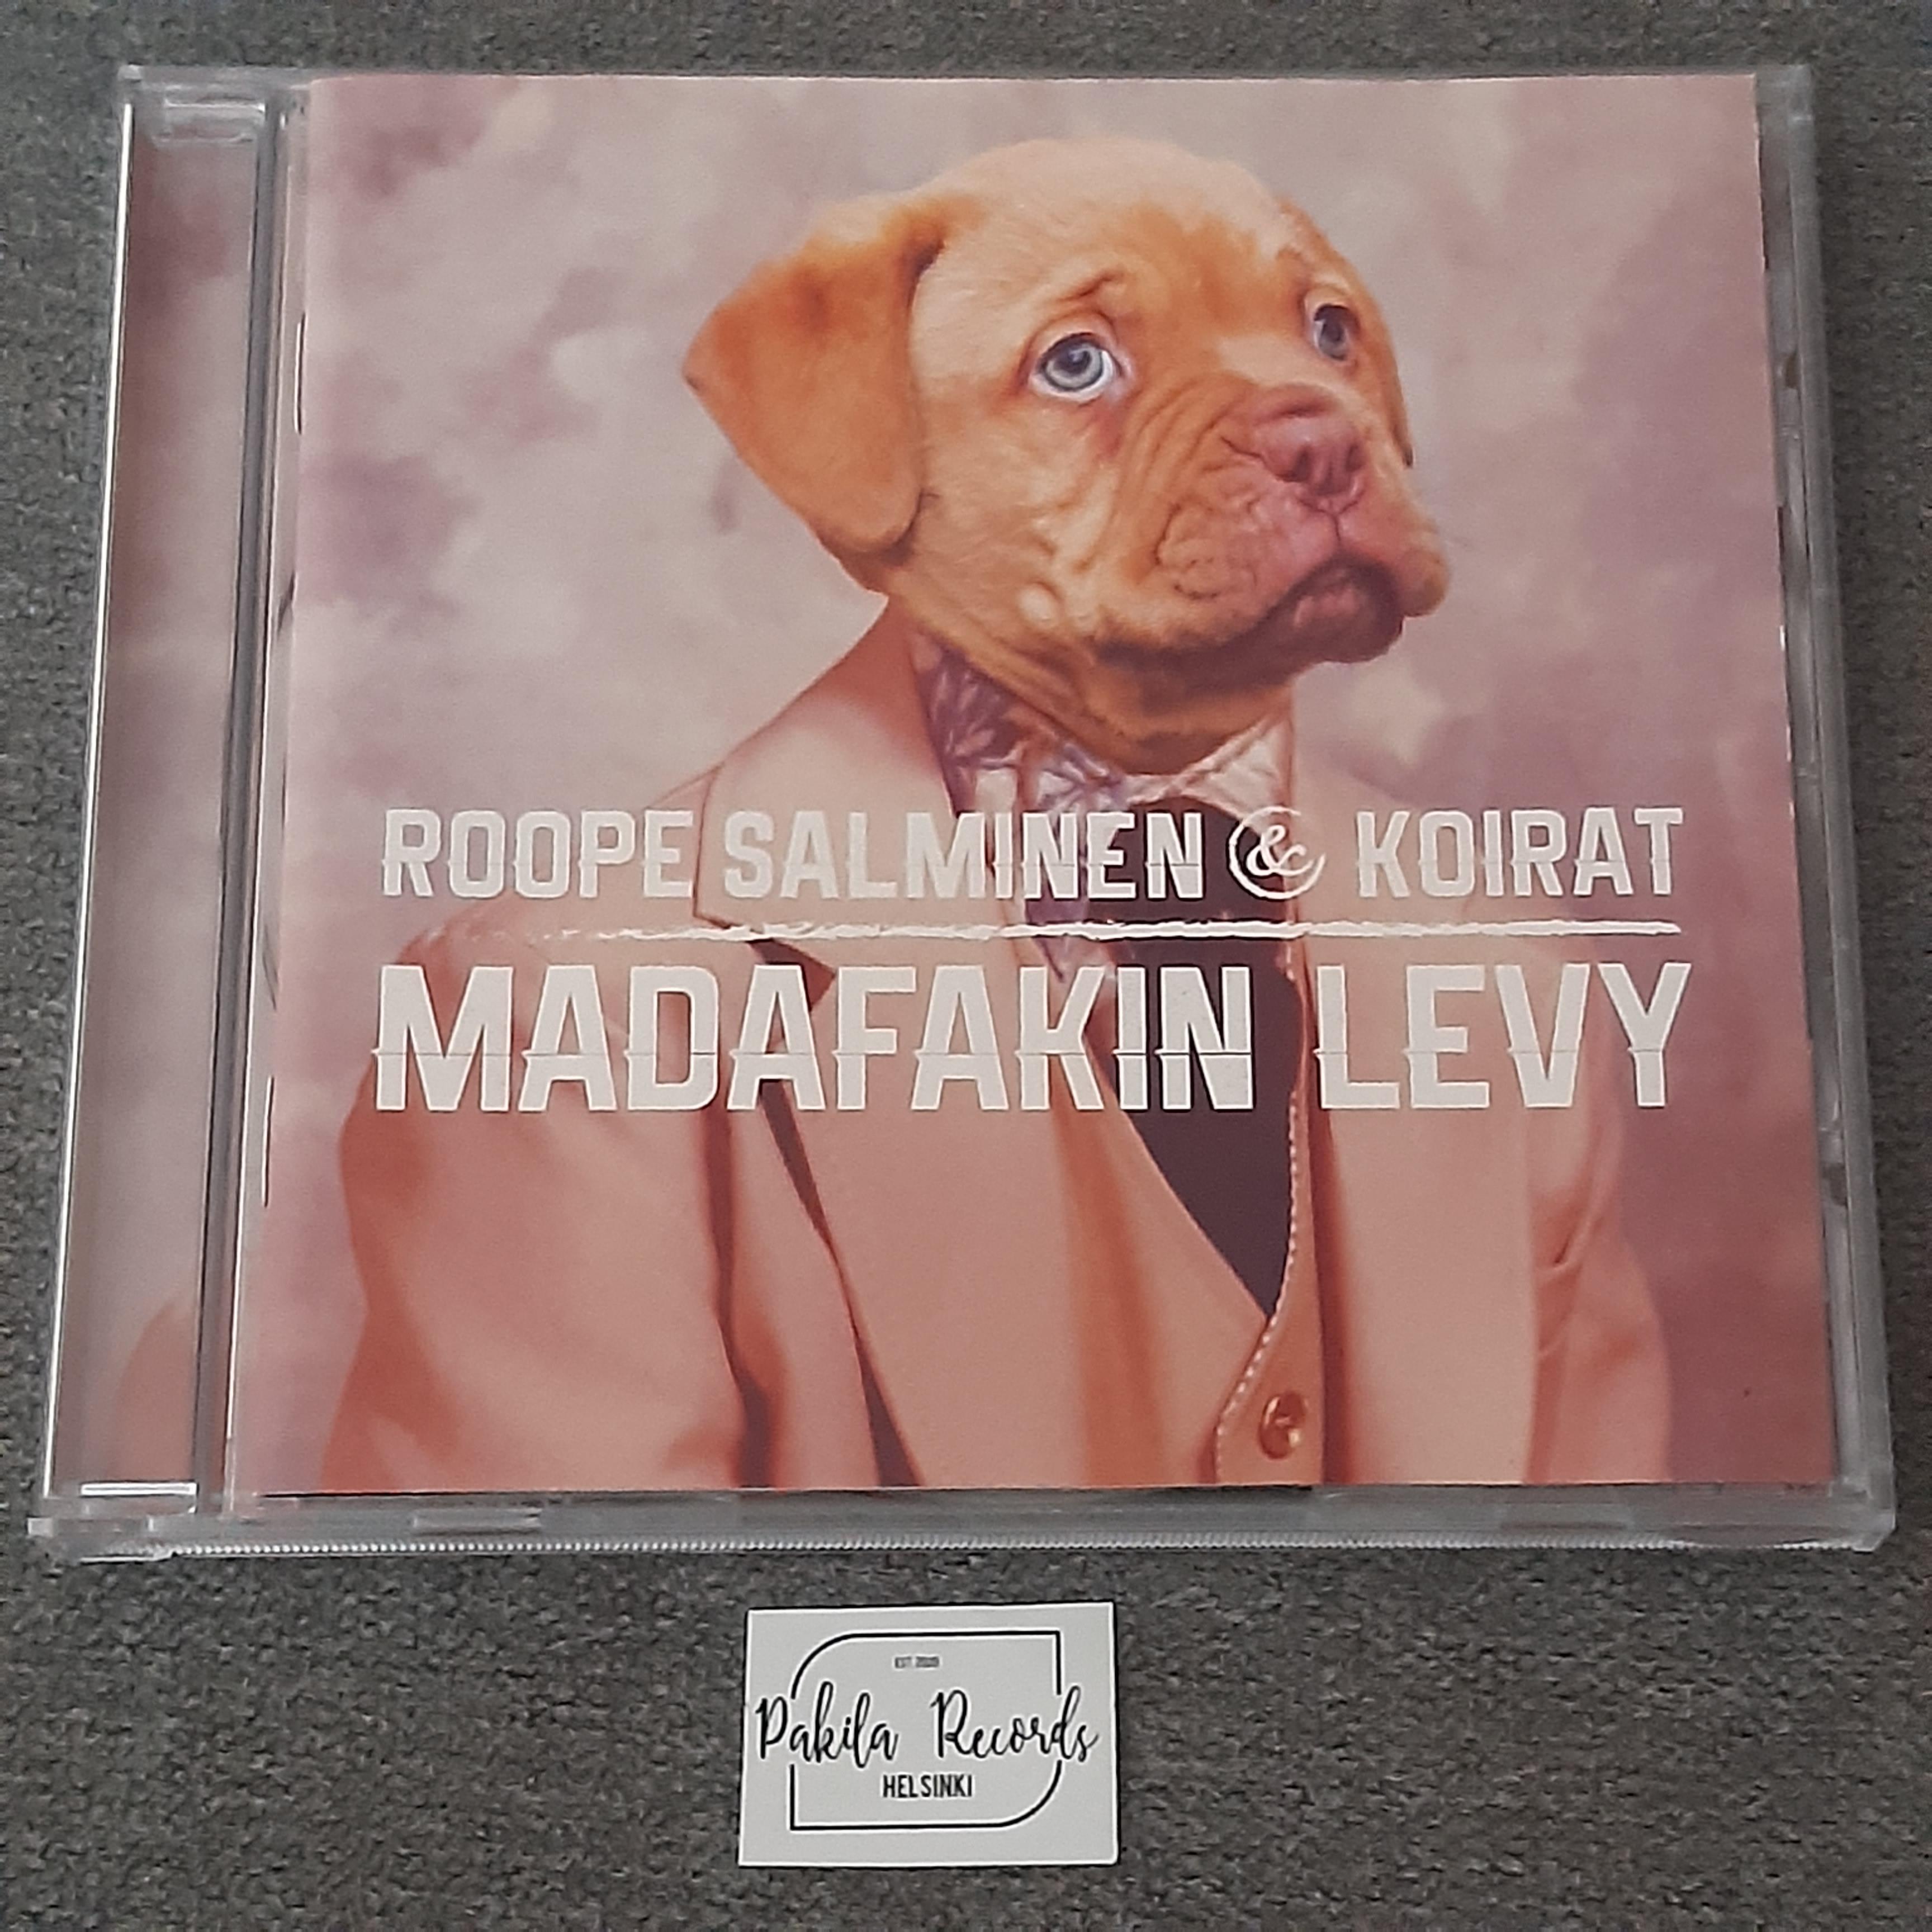 Roope Salminen & Koirat - Madafakin levy - CD (käytetty)